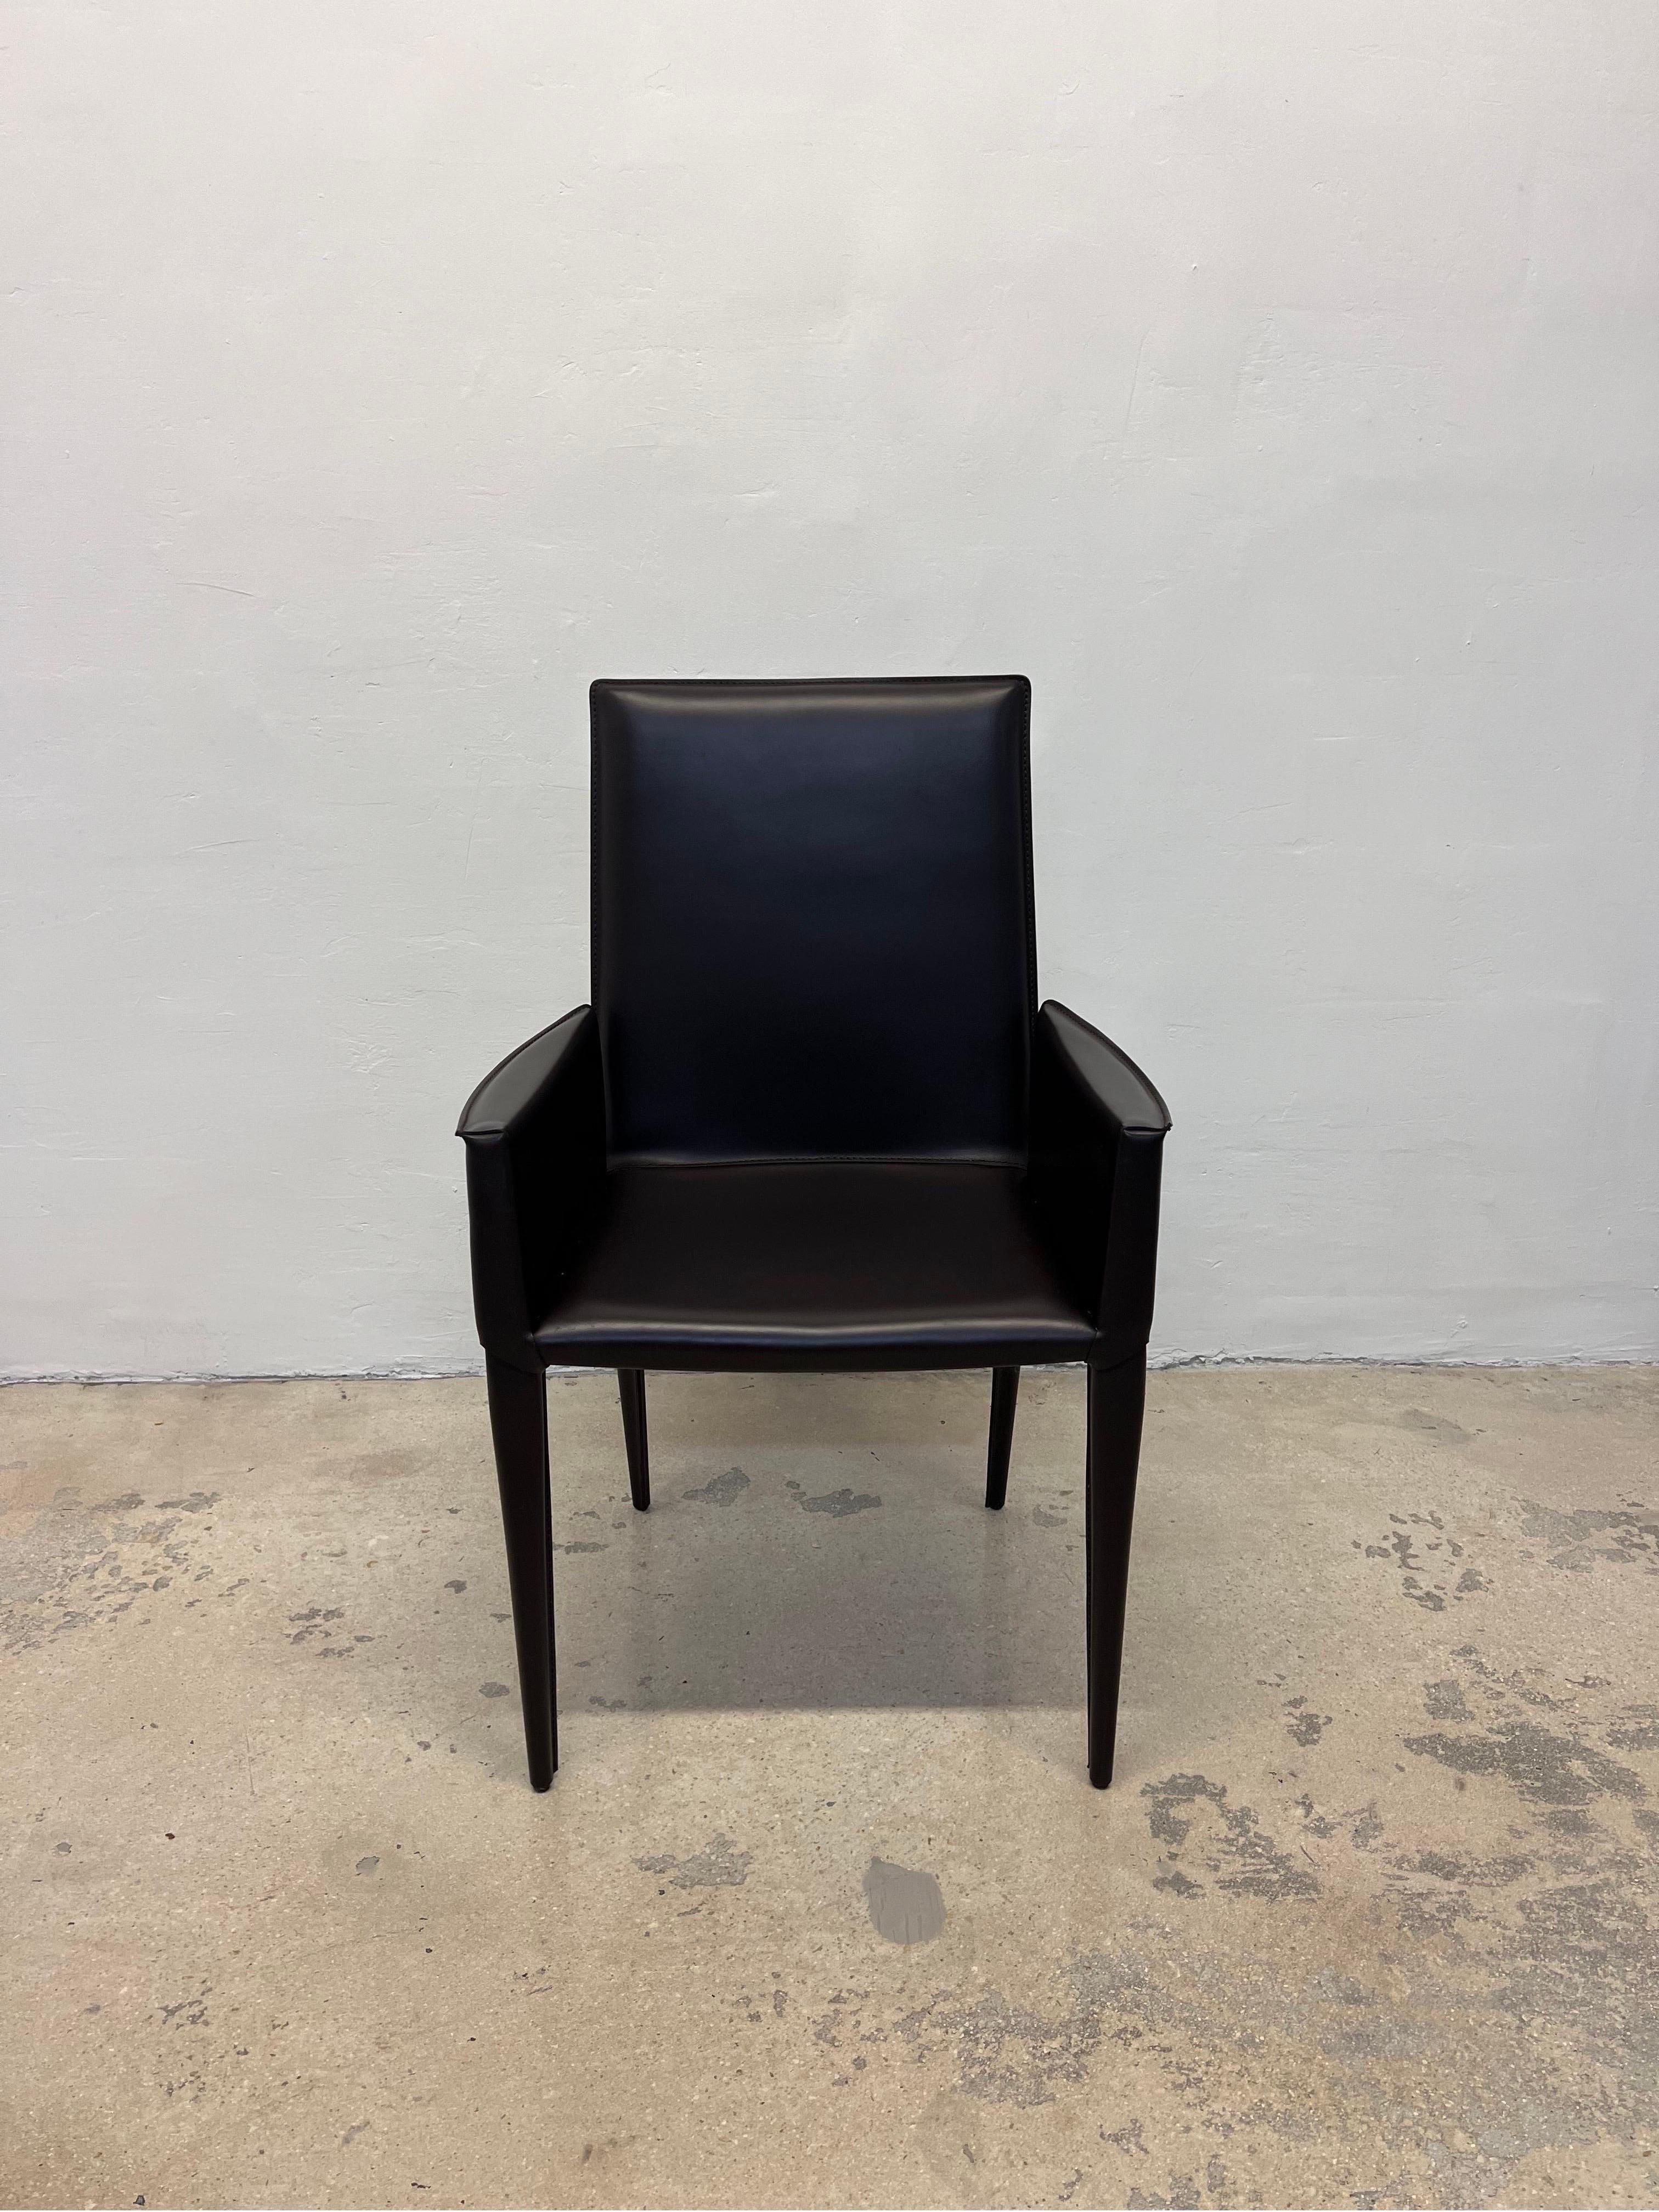 Set aus 4 schokoladenbraunen Bottega-Esszimmerstühlen aus Leder, entworfen von Renzo Fauciglietti & Graziella Bianchi und hergestellt von Frag für Design Within Reach. 

Armhöhe: 24-3/4